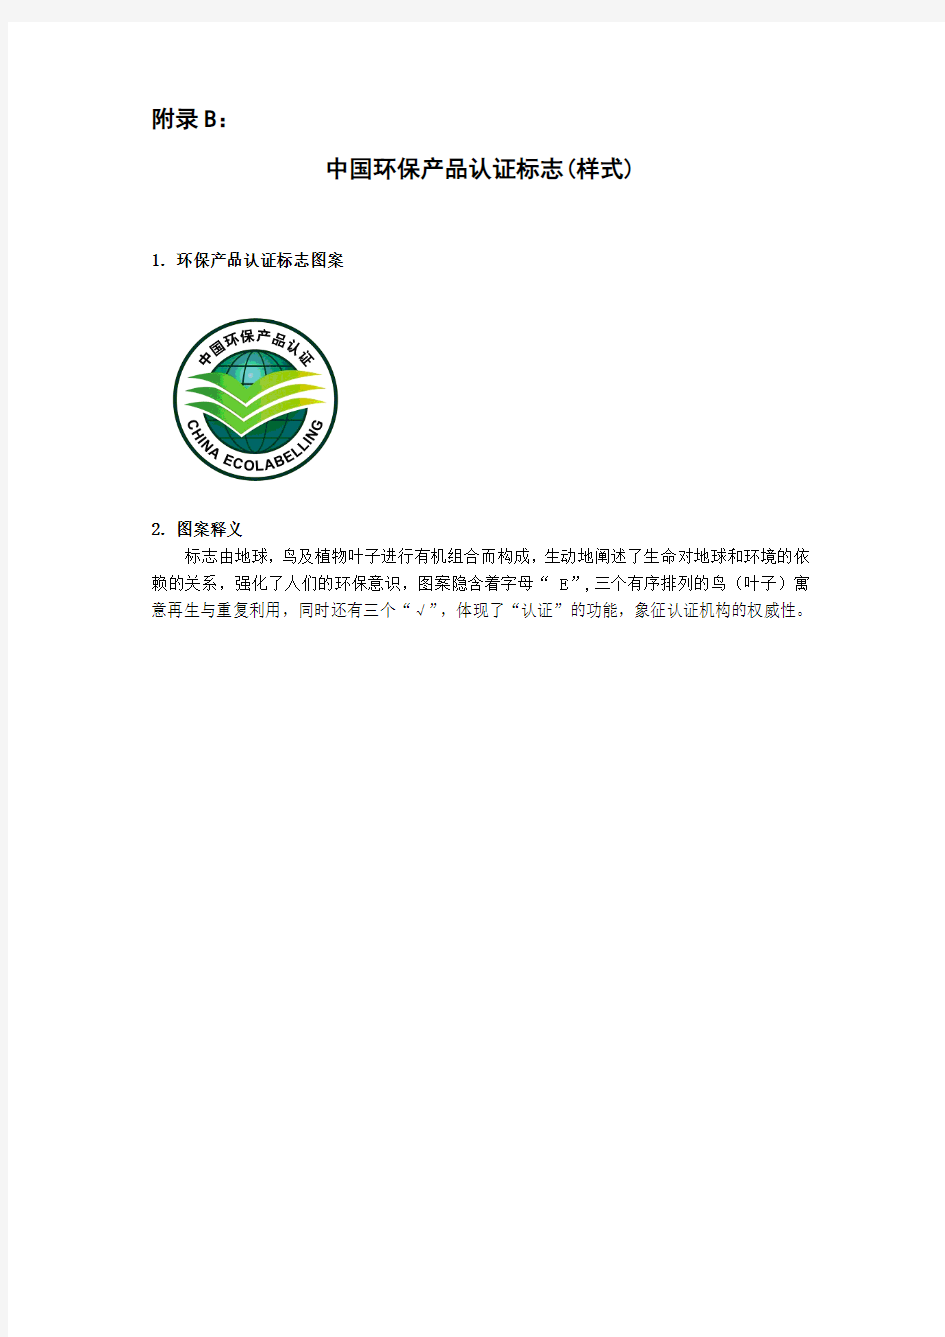 中国节能(节水)产品认证标志(样式)